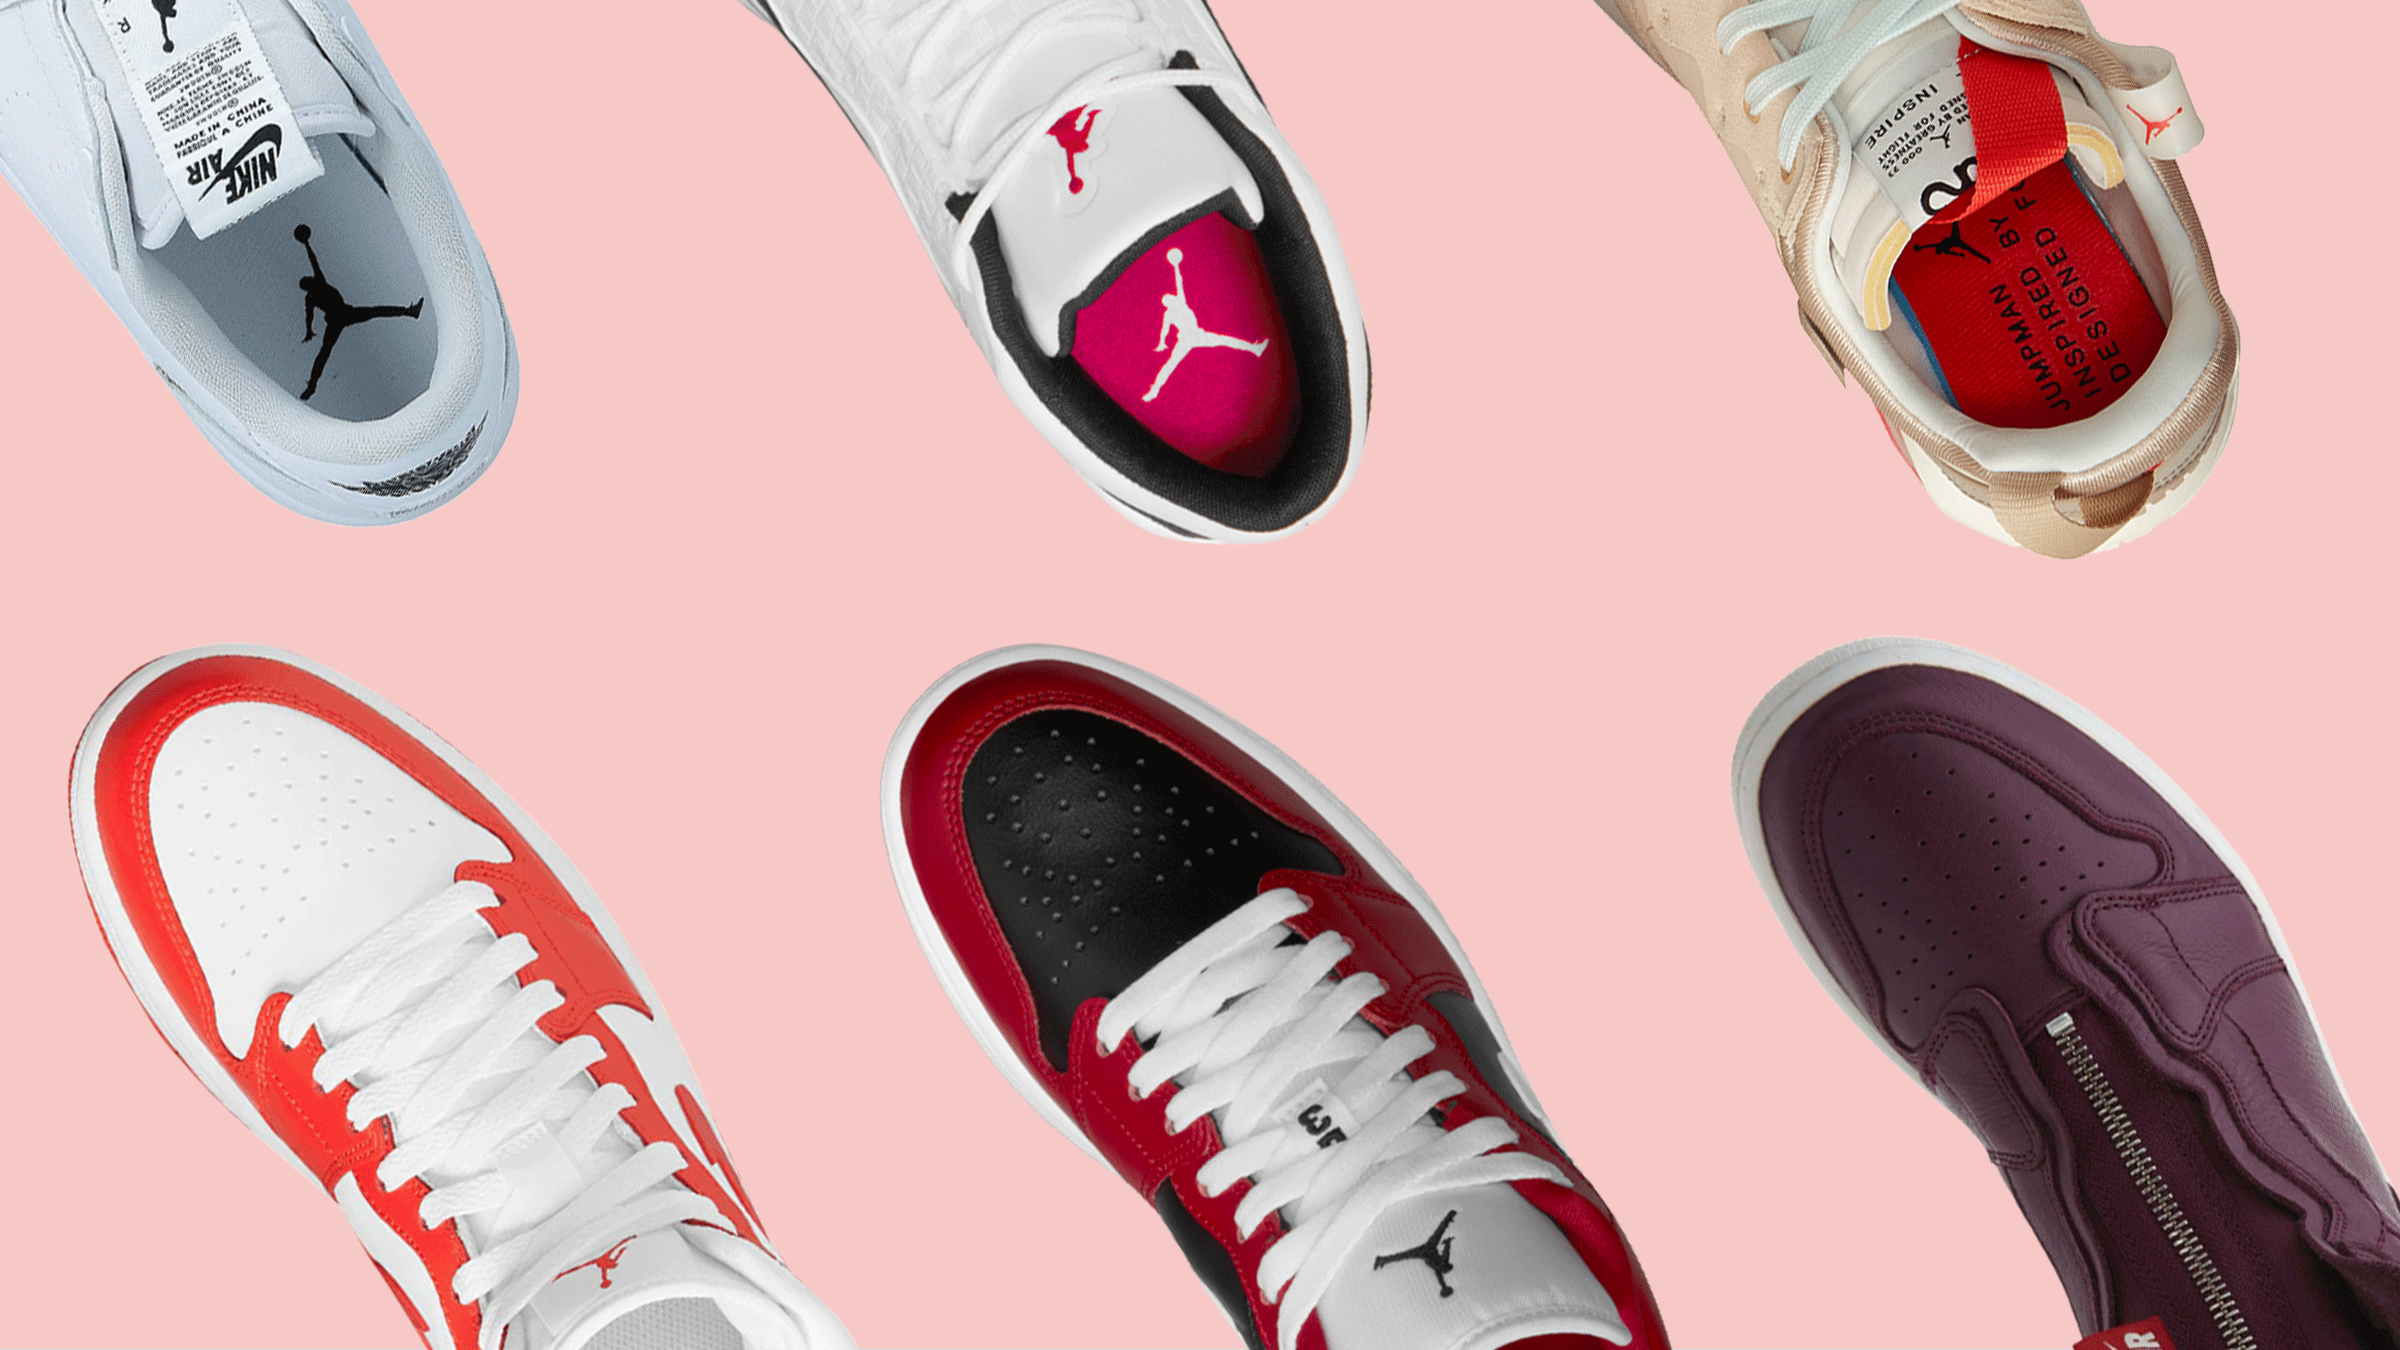 7 Best Jordan Sneakers For Women in 2022